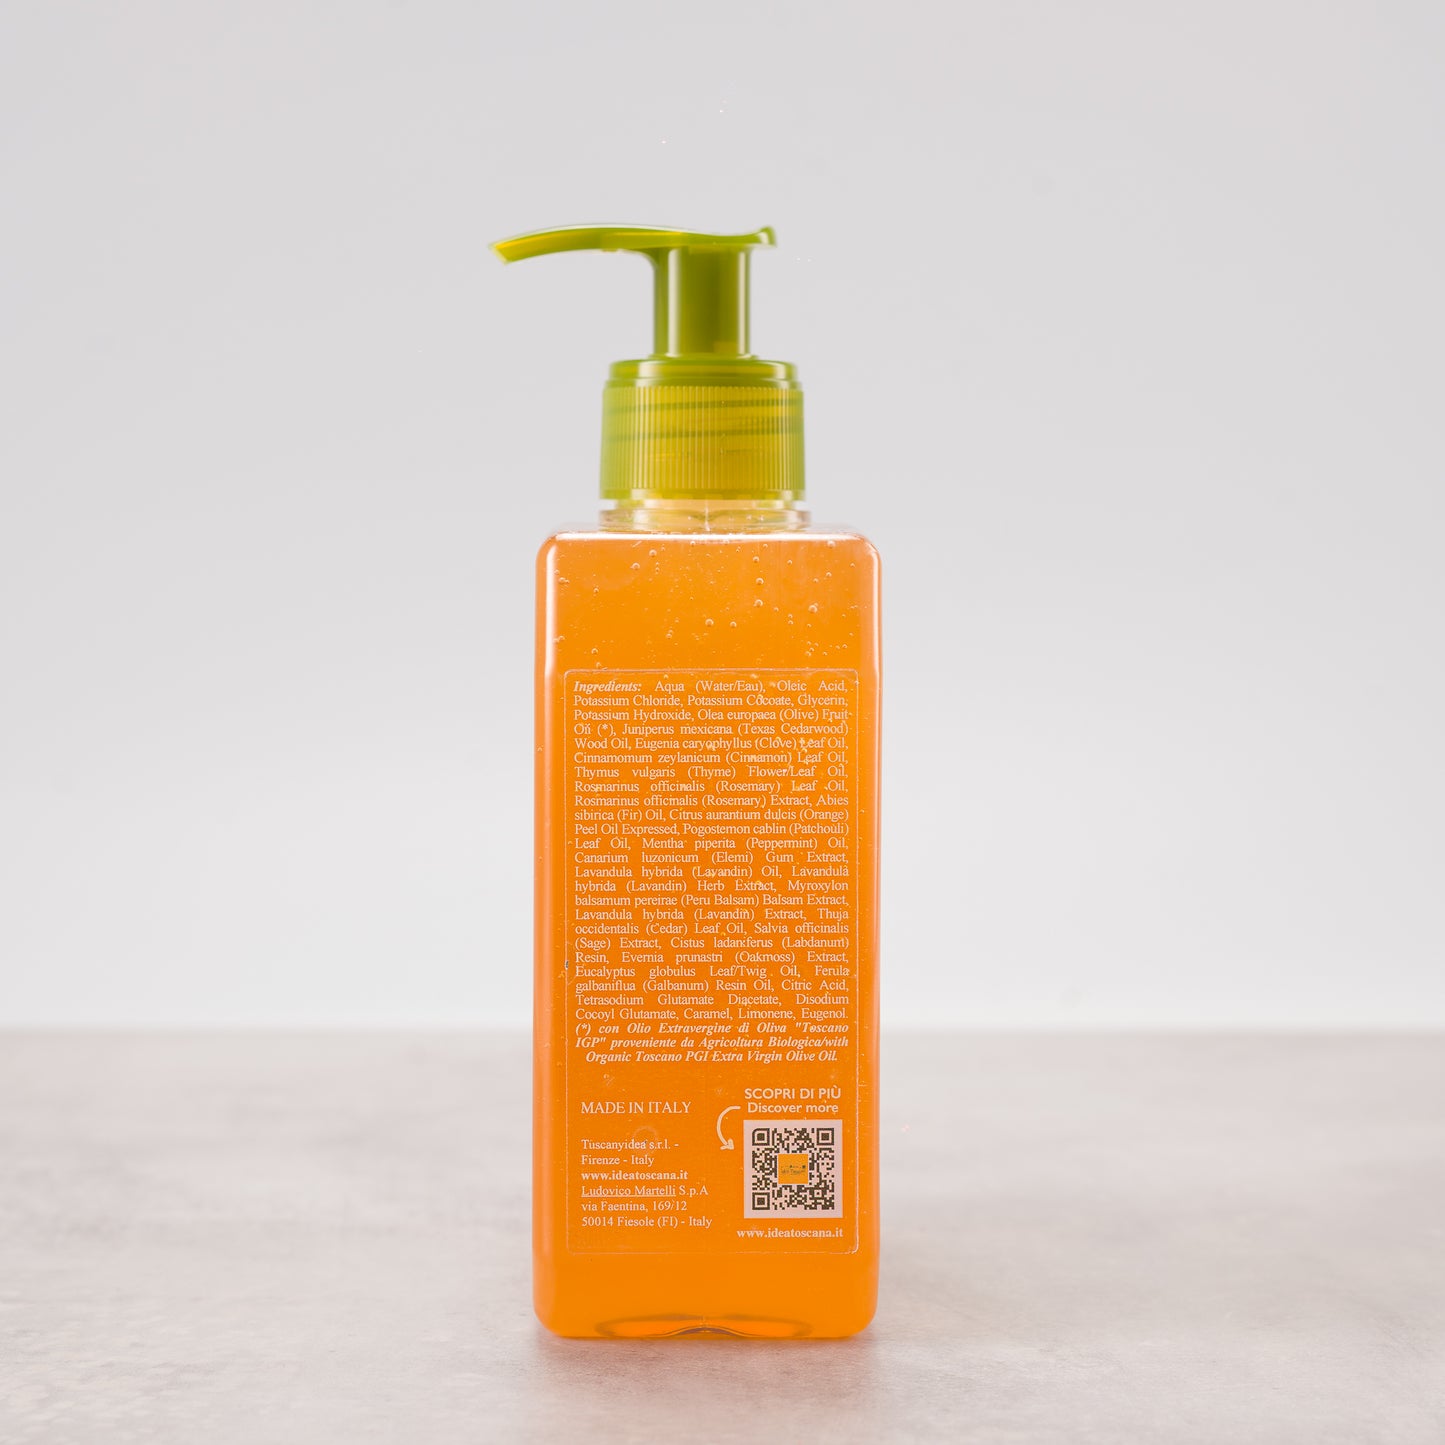 Liquid Soap Dispenser Prima Spremitura 500ml - Idea Toscana